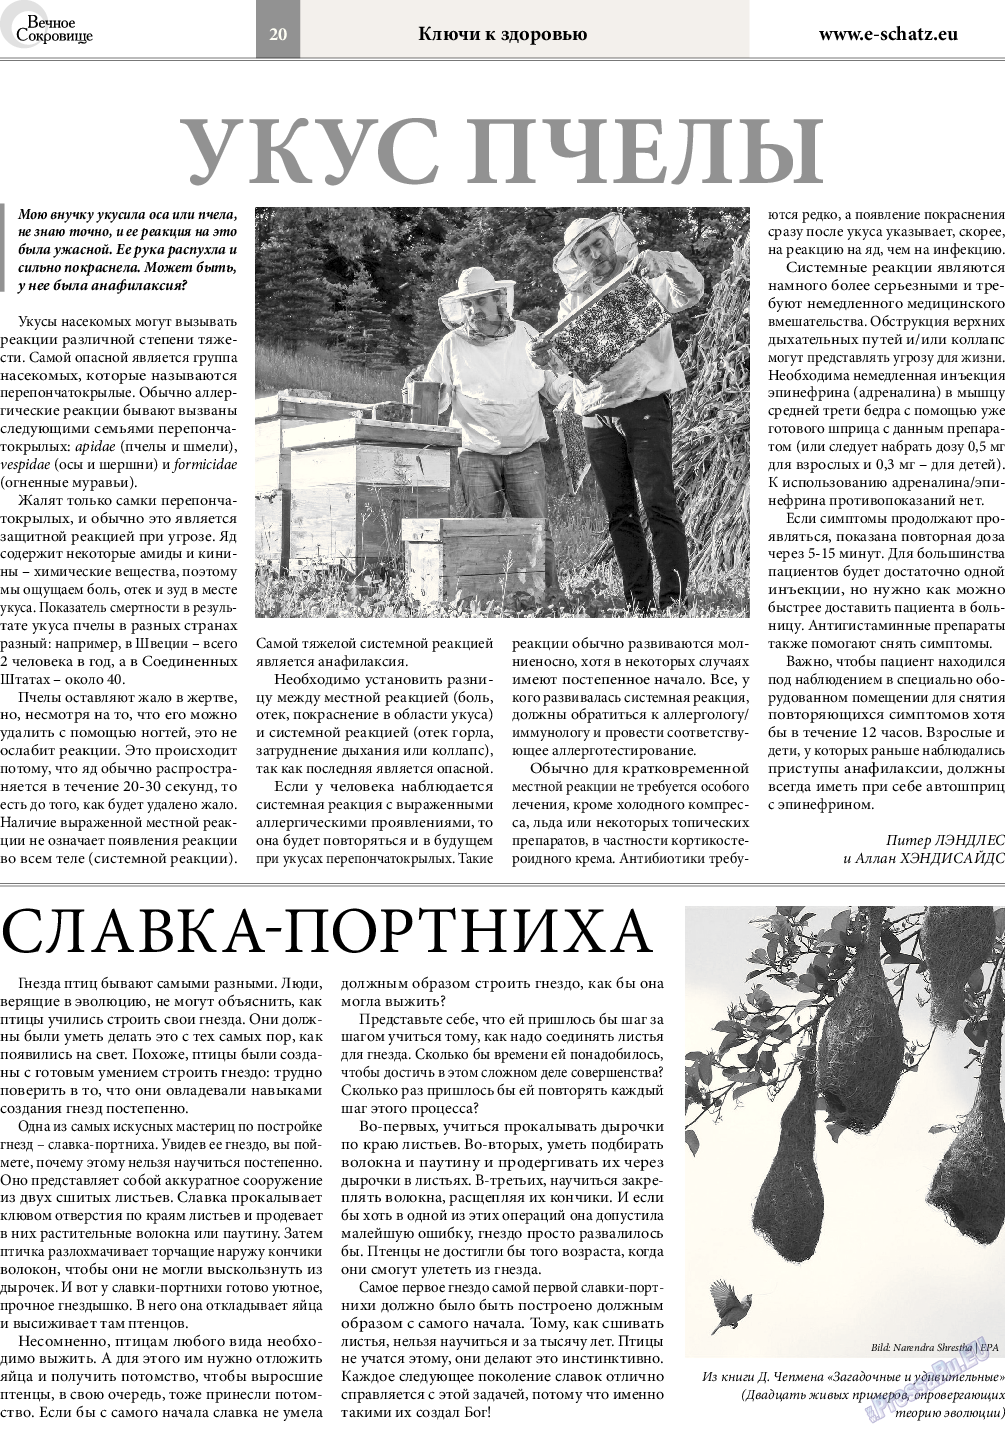 Вечное сокровище, газета. 2015 №4 стр.20